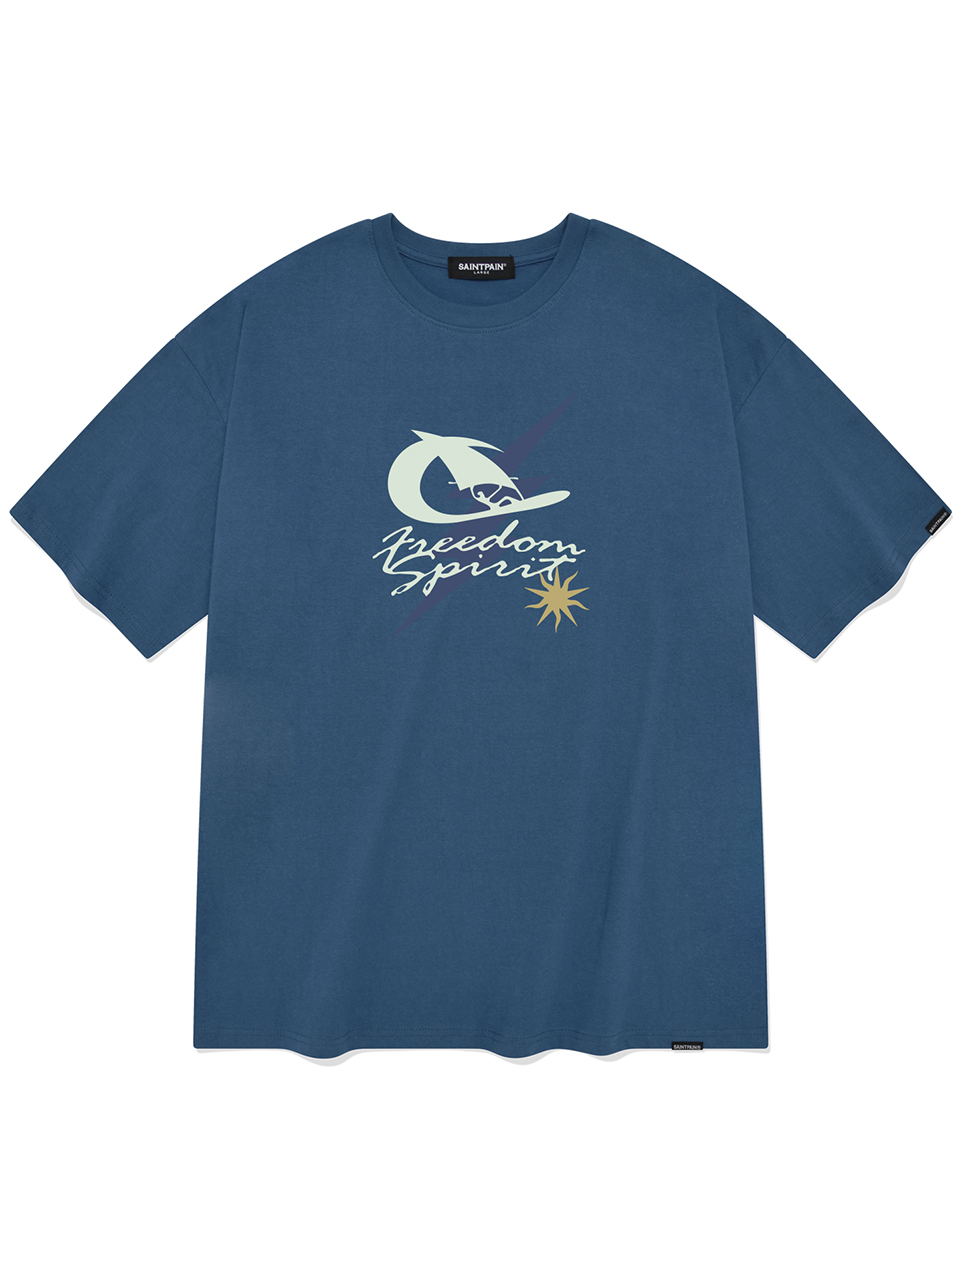 SP 서핑 볼트 반팔 티셔츠-딥블루